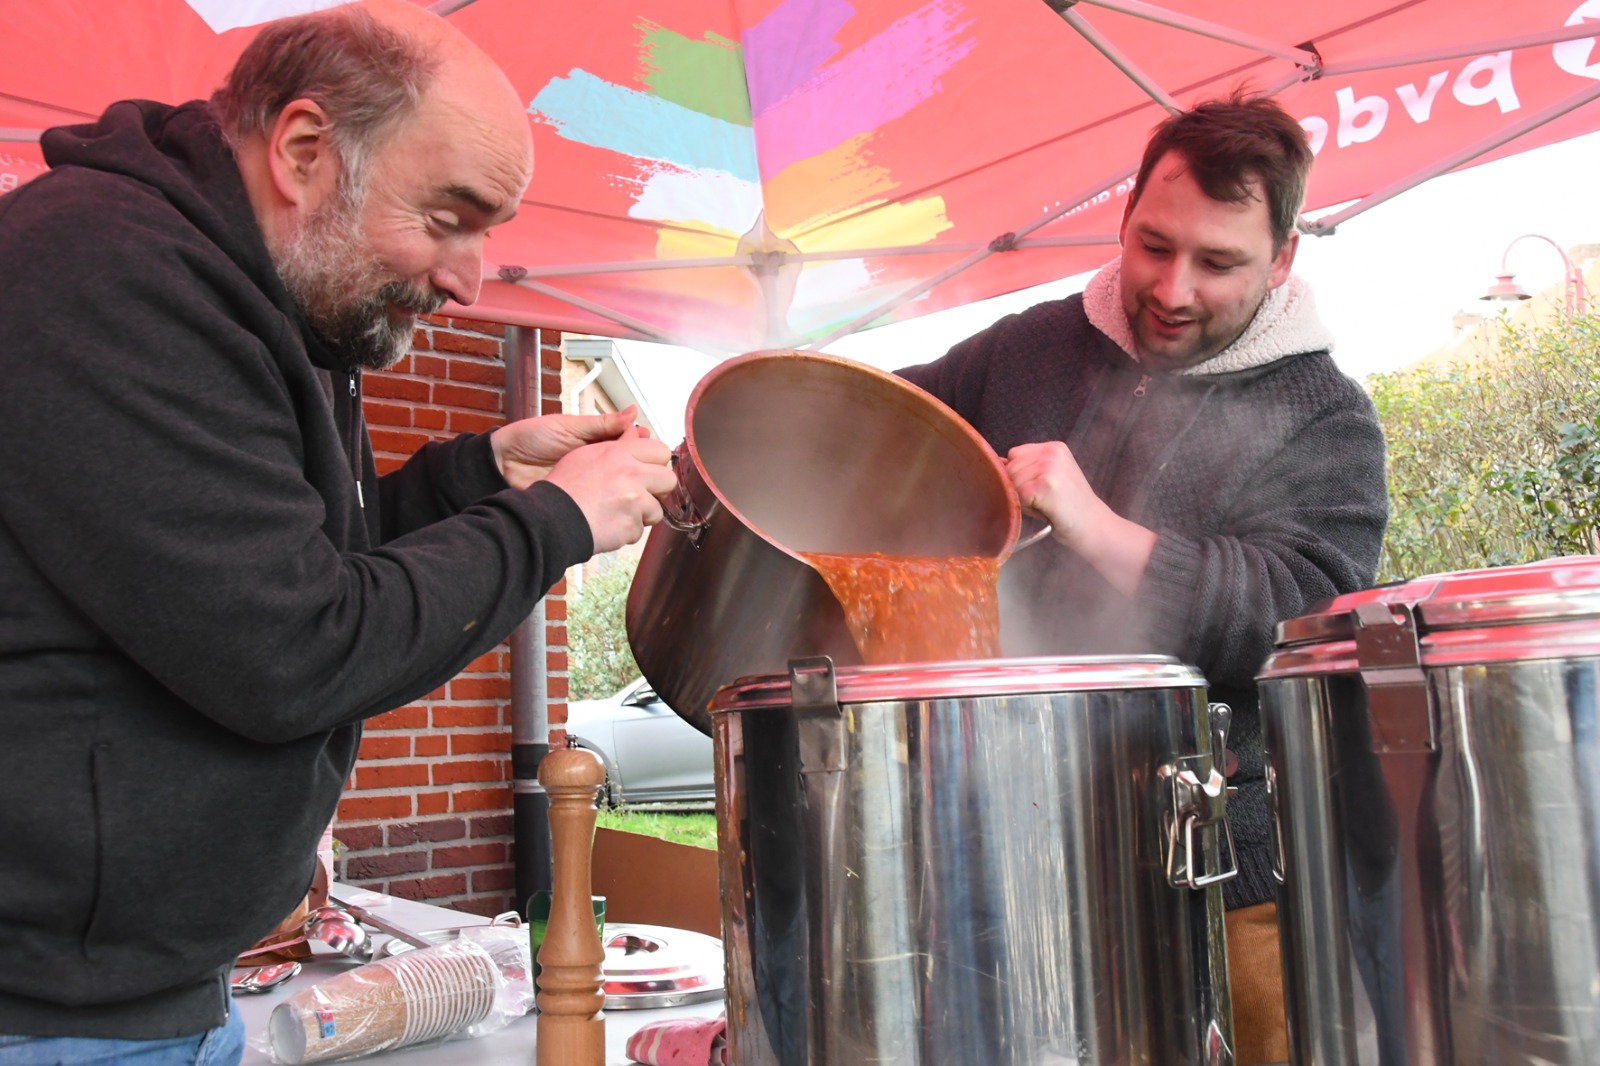 PVDA Aarschot deelt soep uit tijdens koudste dag van het jaar